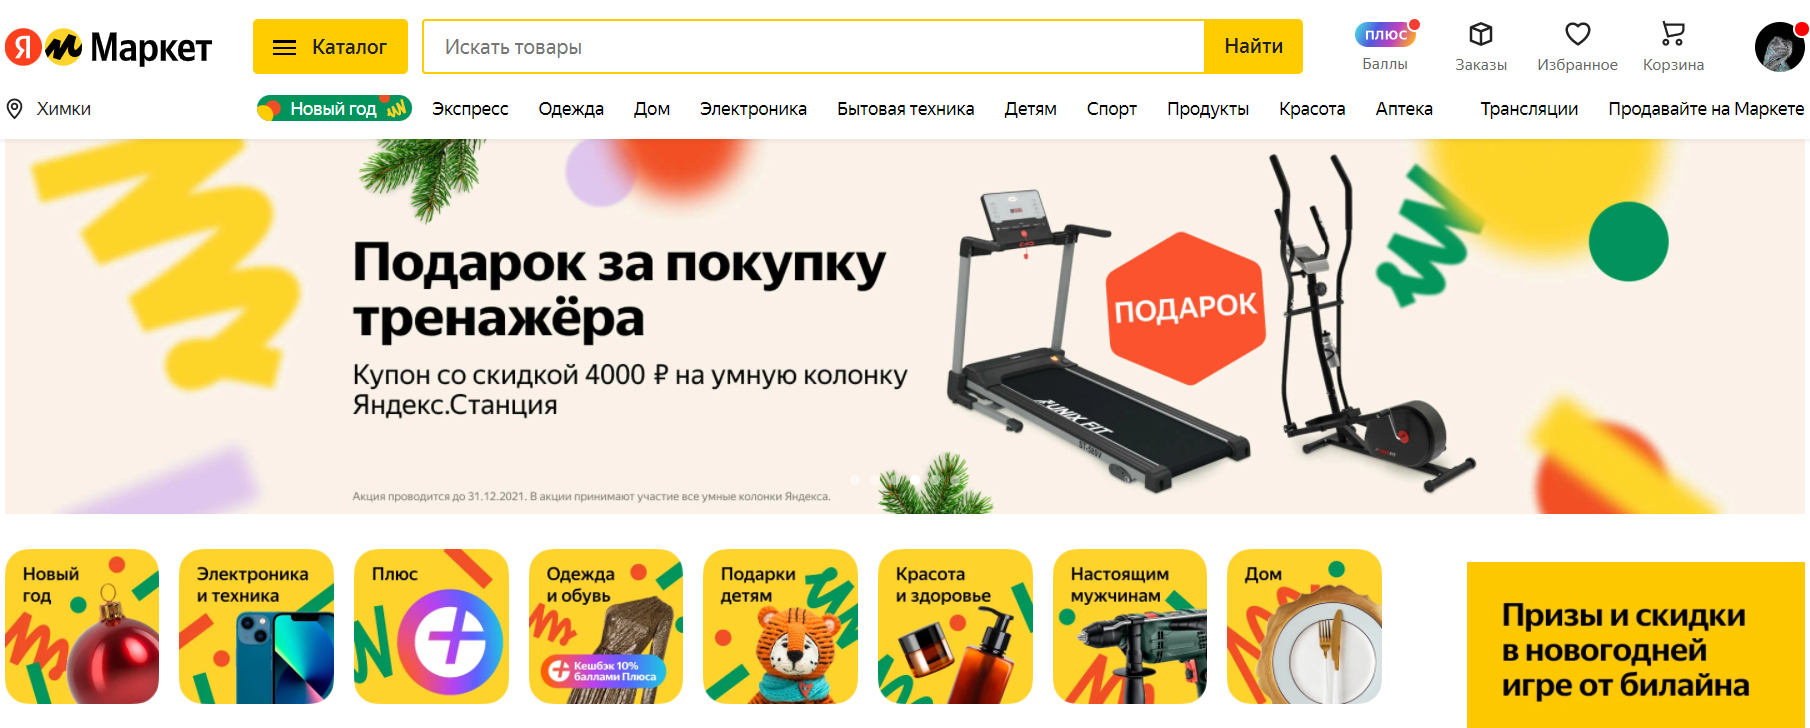 Яндекс.Маркет официальный сайт маркетплейса